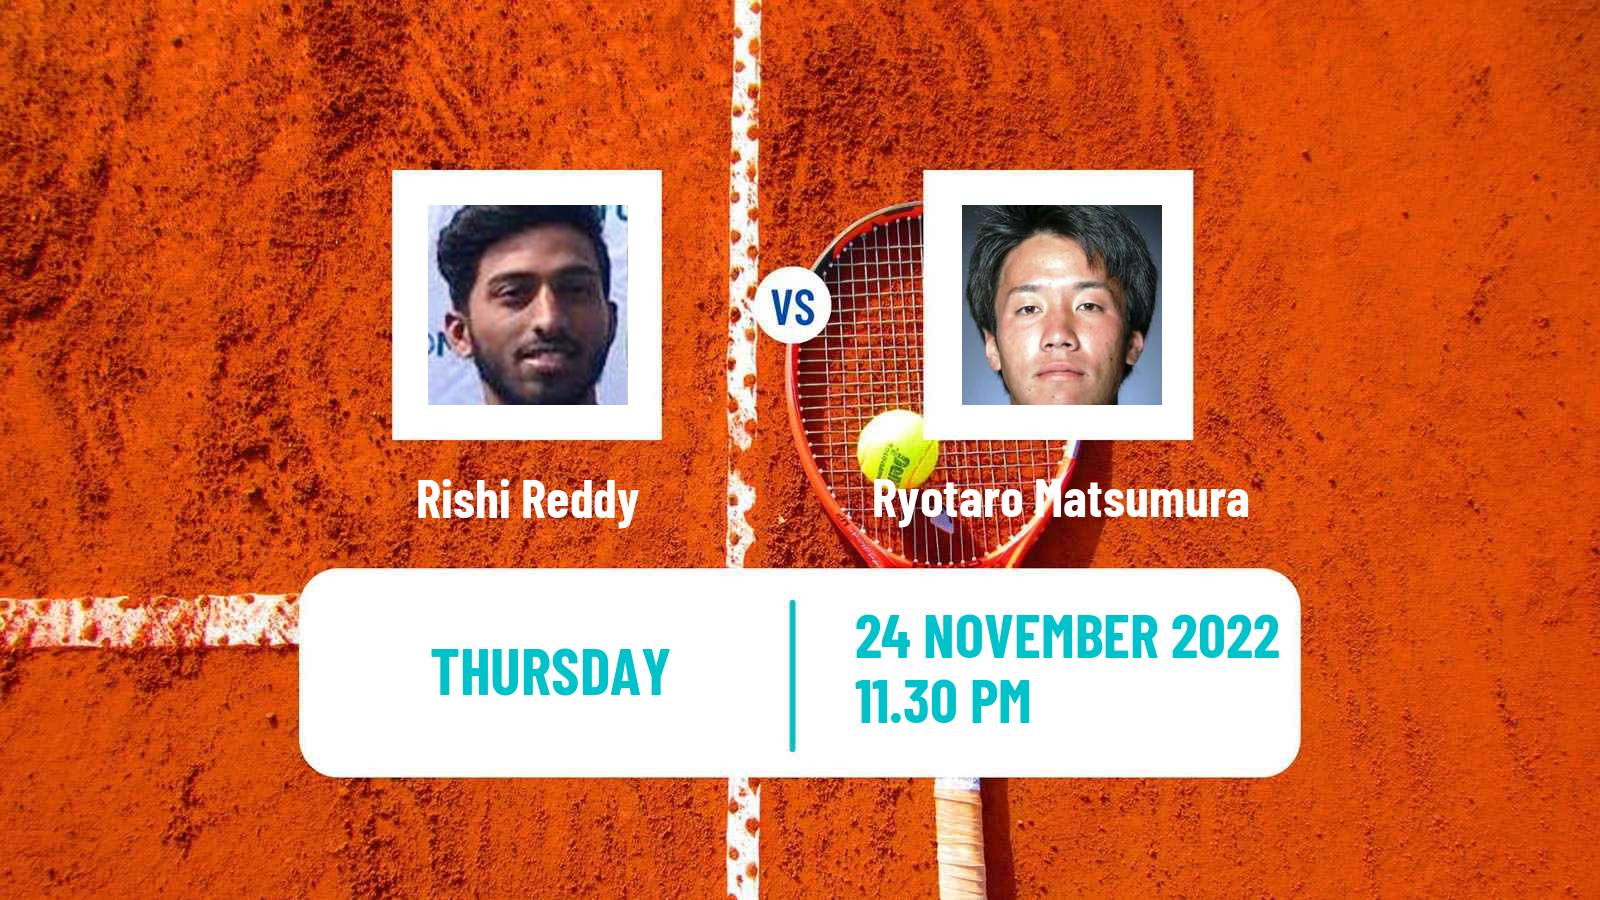 Tennis ITF Tournaments Rishi Reddy - Ryotaro Matsumura